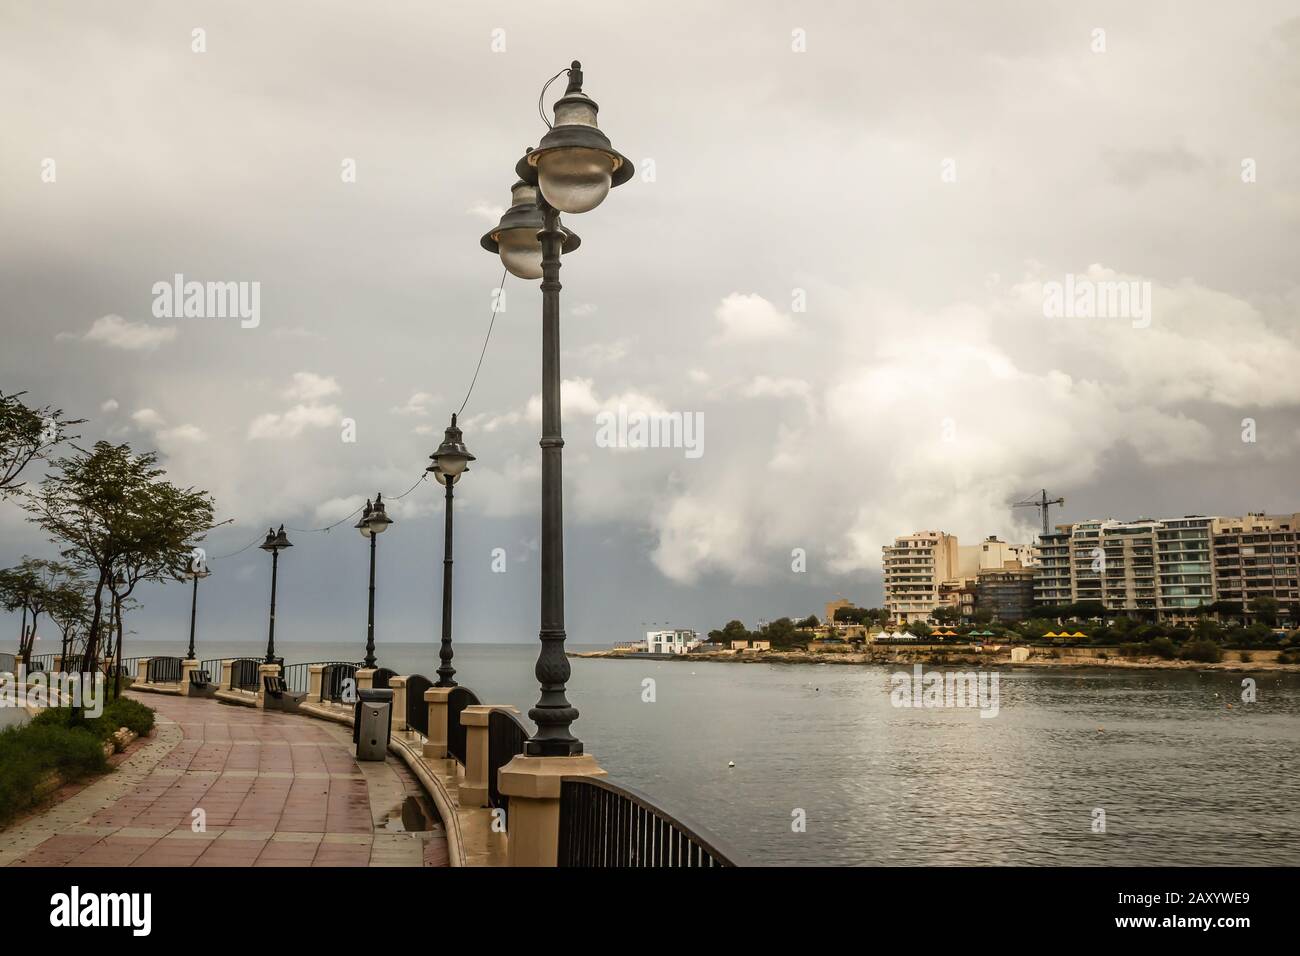 Street lanterns on promenade in Sliema, Malta Stock Photo